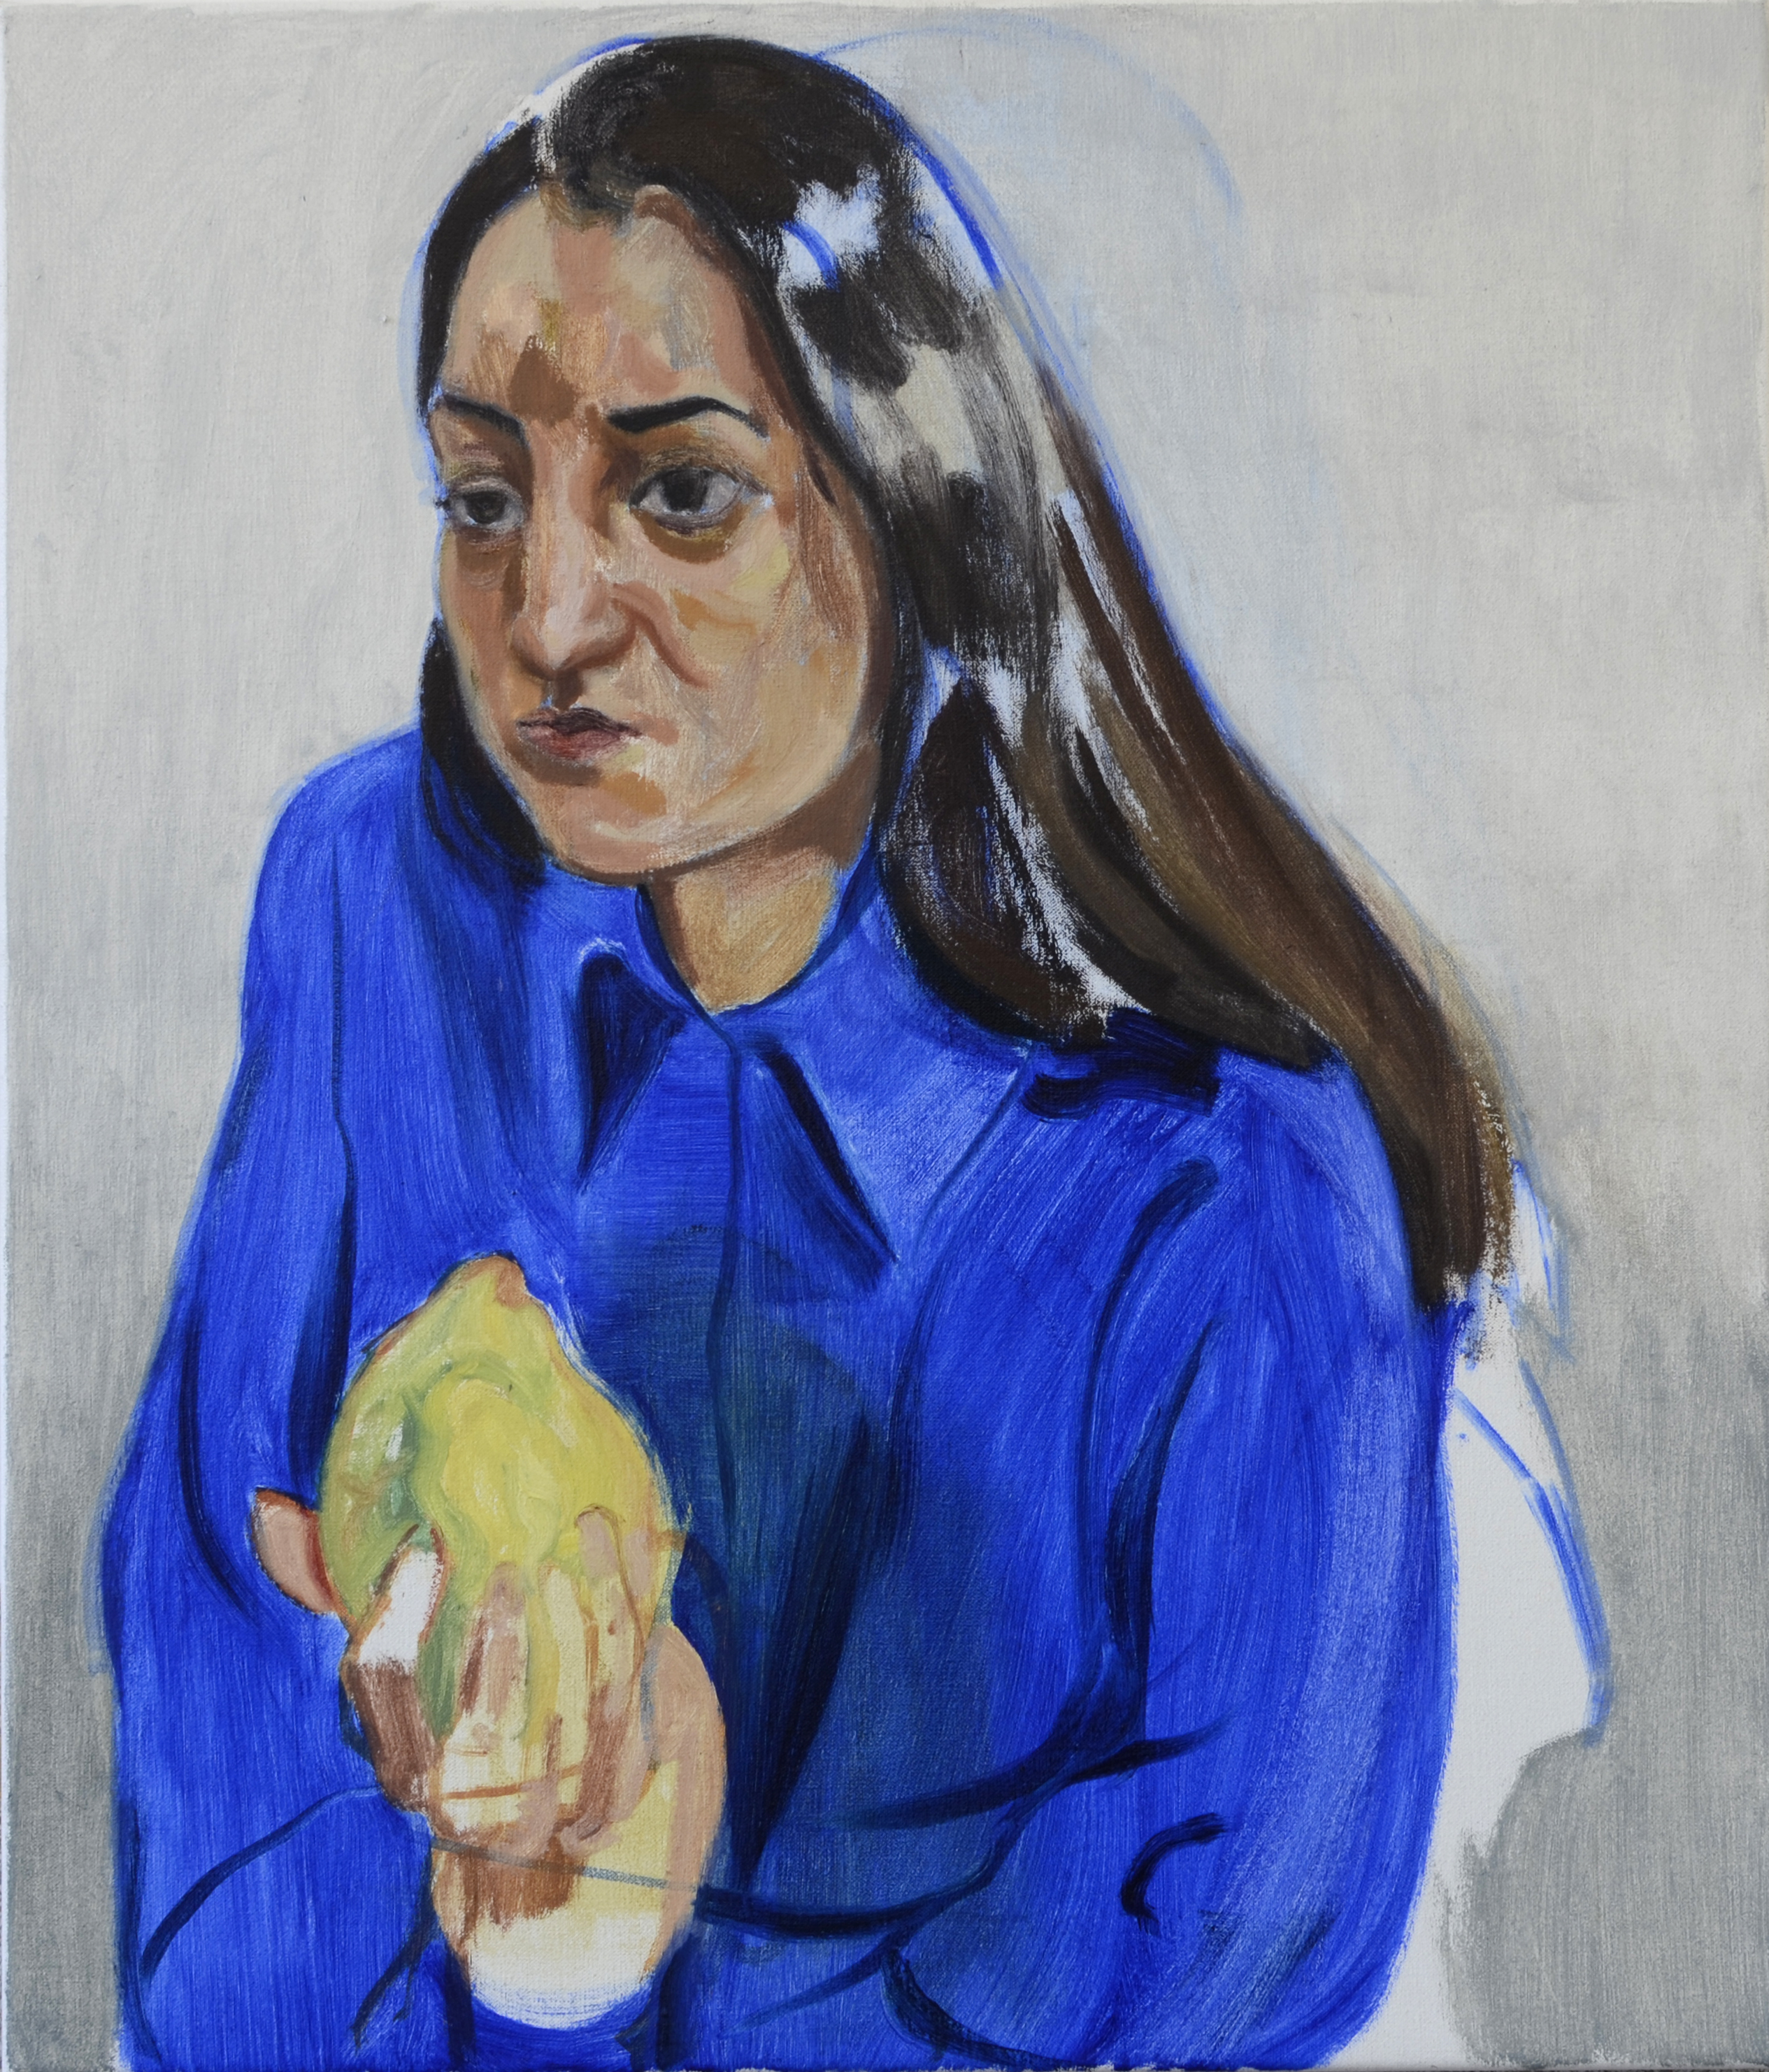 Meisje met blauw hemd - Klaas Op De Beeck 2018